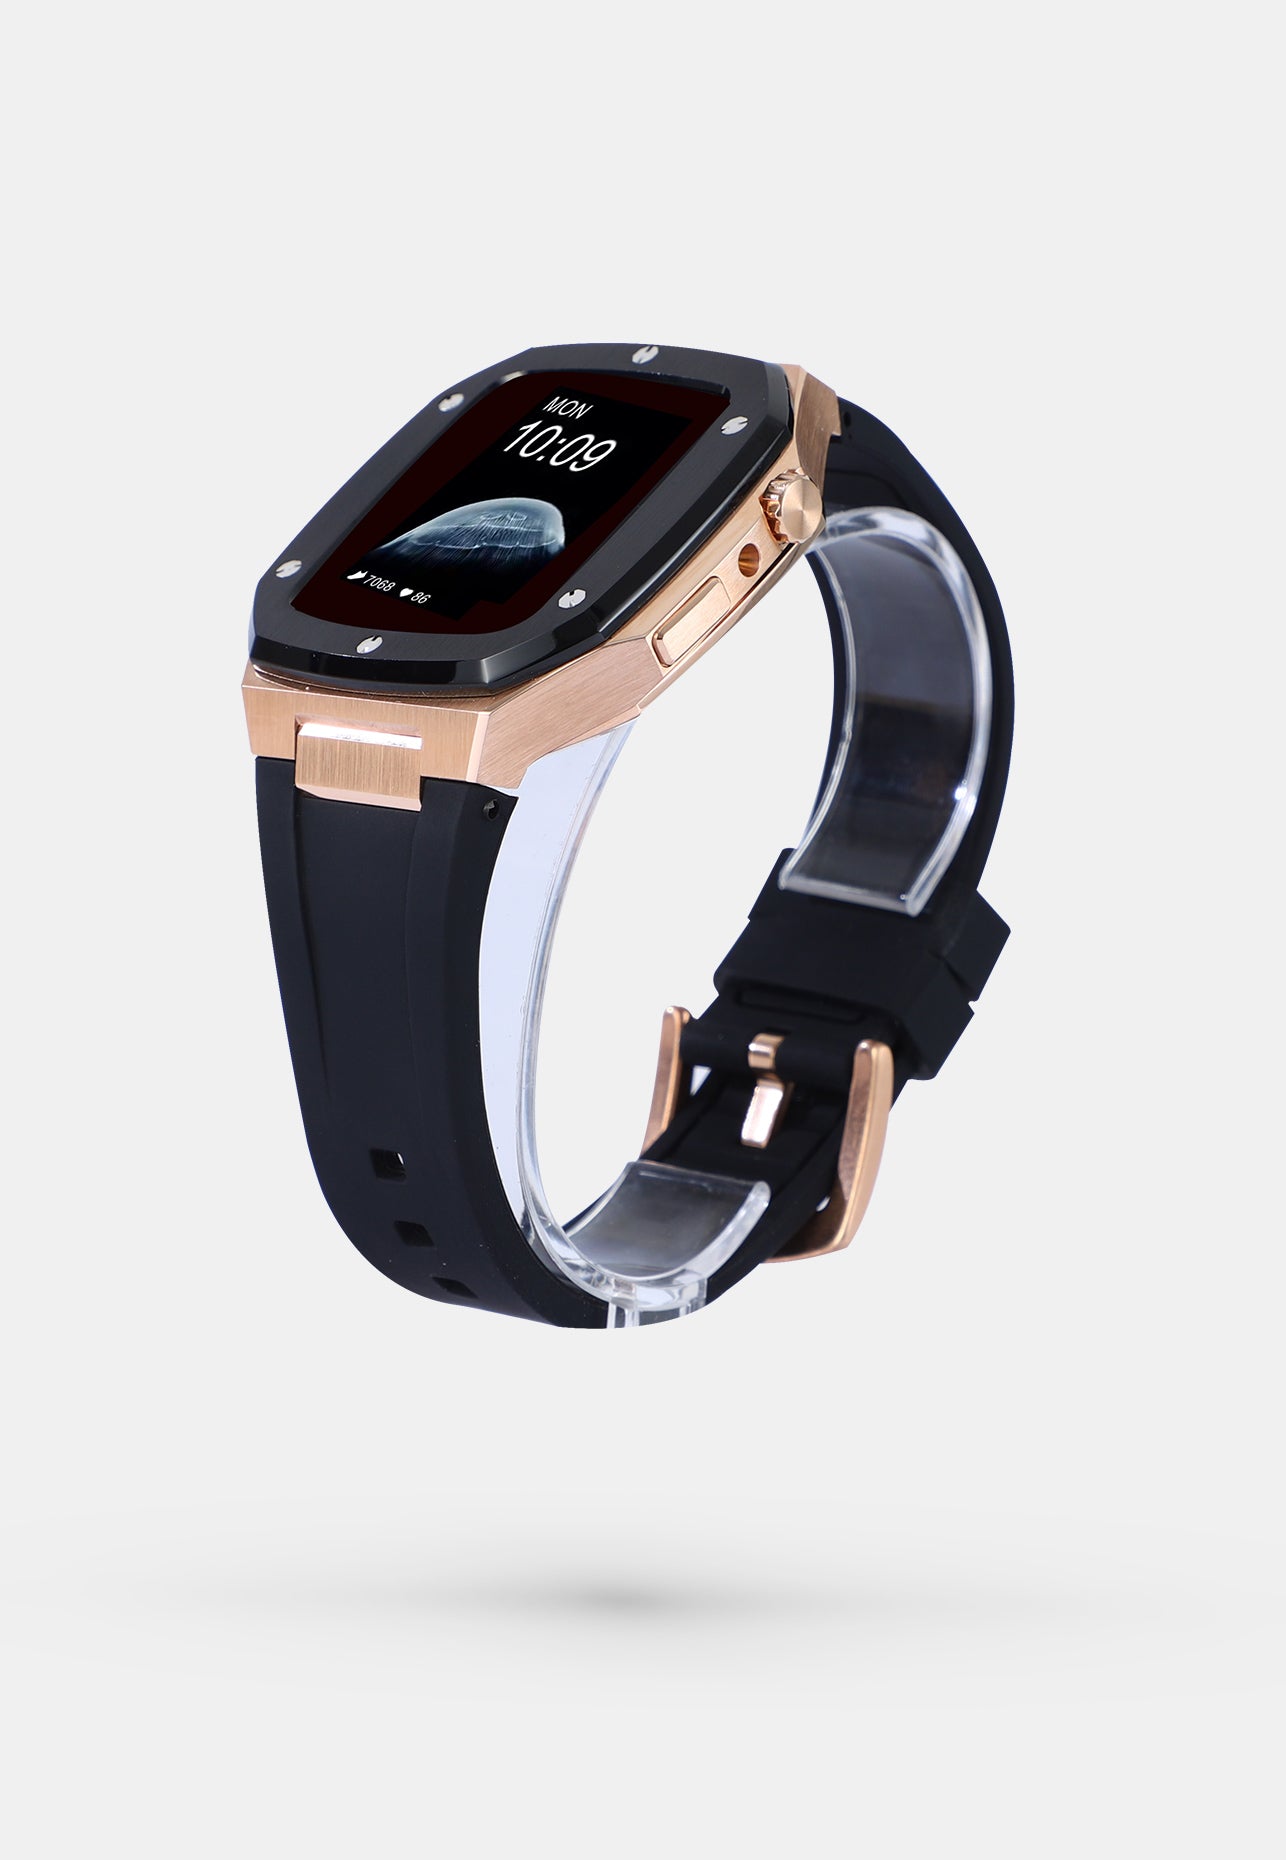 Offshore Black - Accessoire Apple Watch - Coque Etui Boitier Noir avec lunette de la Montre en Or Bracelet Noir Appel Watch  4, 5, 6 et SE 44mm cote